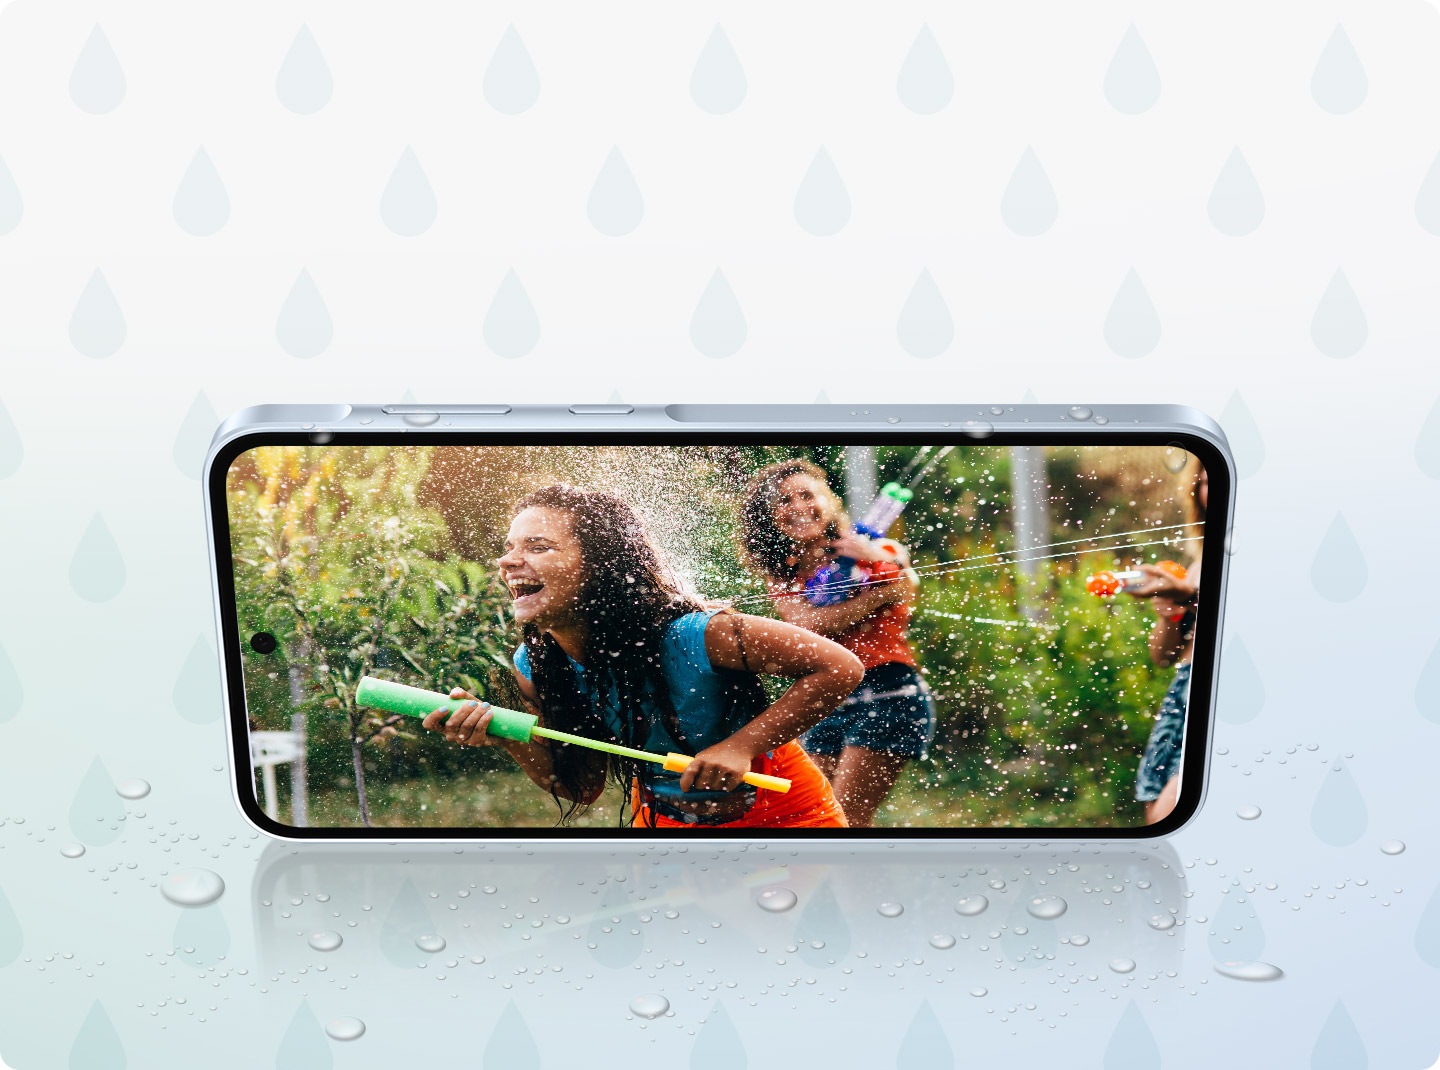 สมาร์ทโฟนในโหมดแนวนอนที่แสดงภาพของเด็กผู้หญิงสองคนที่กำลังเพลิดเพลินไปกับการสาดน้ำใส่กัน พร้อมกับมีหยดน้ำกระเซ็นรอบ ๆ